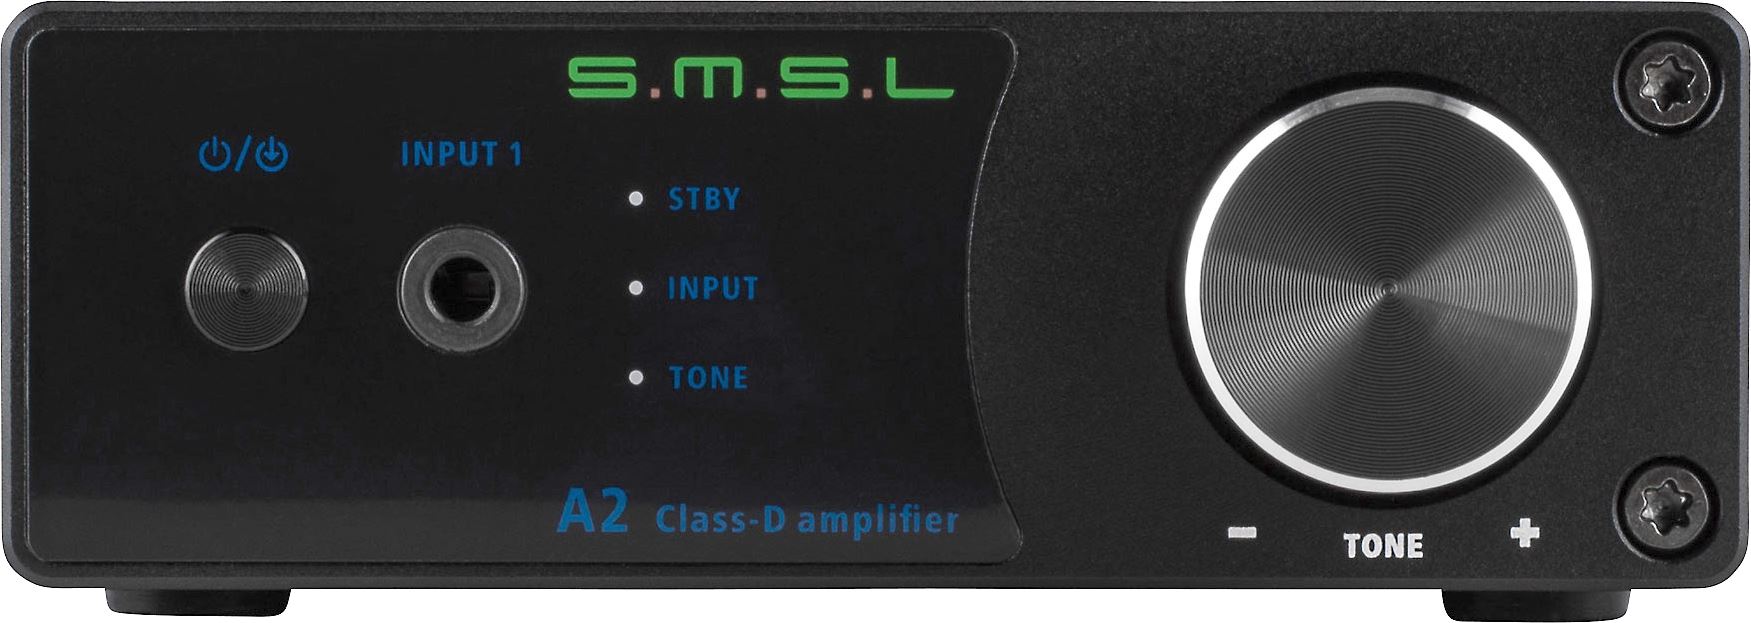 SMSL VMV D2R USB DAC ROHM Flagship DAC BD34301EKV Audio Decoder